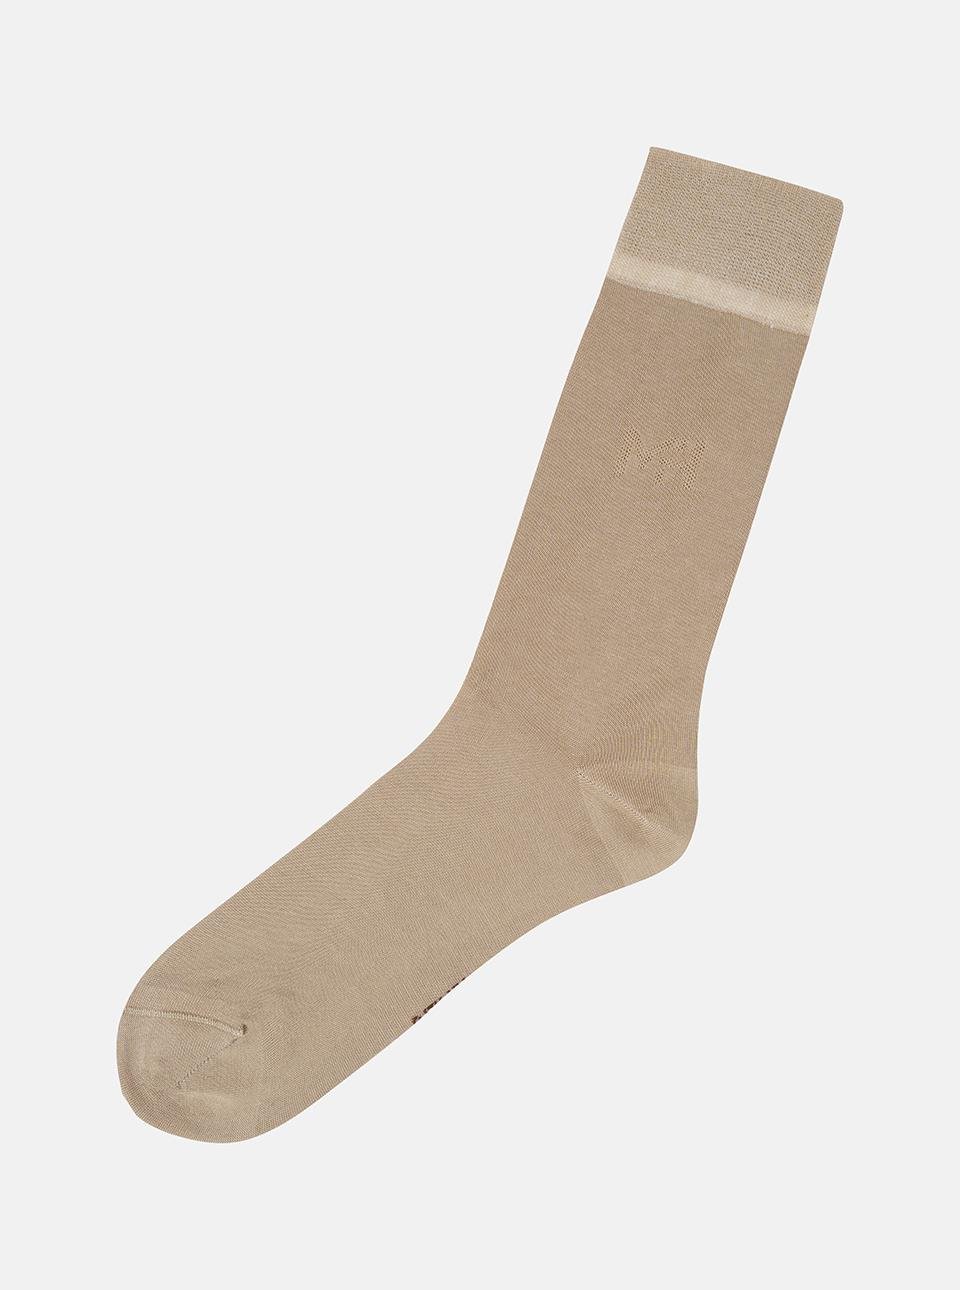 MrHero Siyah %100 Merserize Basic Tekli Erkek Soket Çorap - 1082 Everest